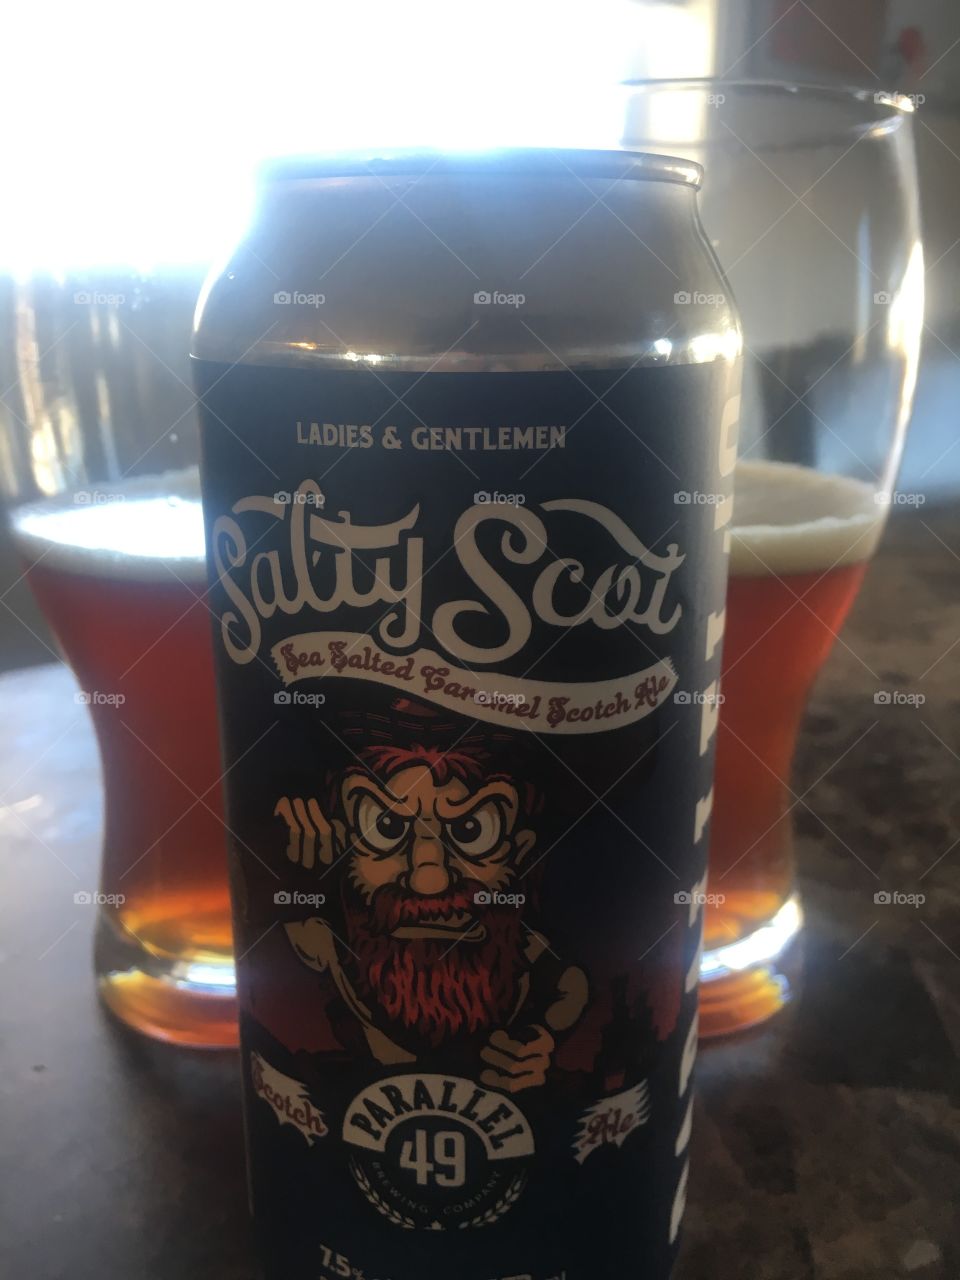 Salty scot beer